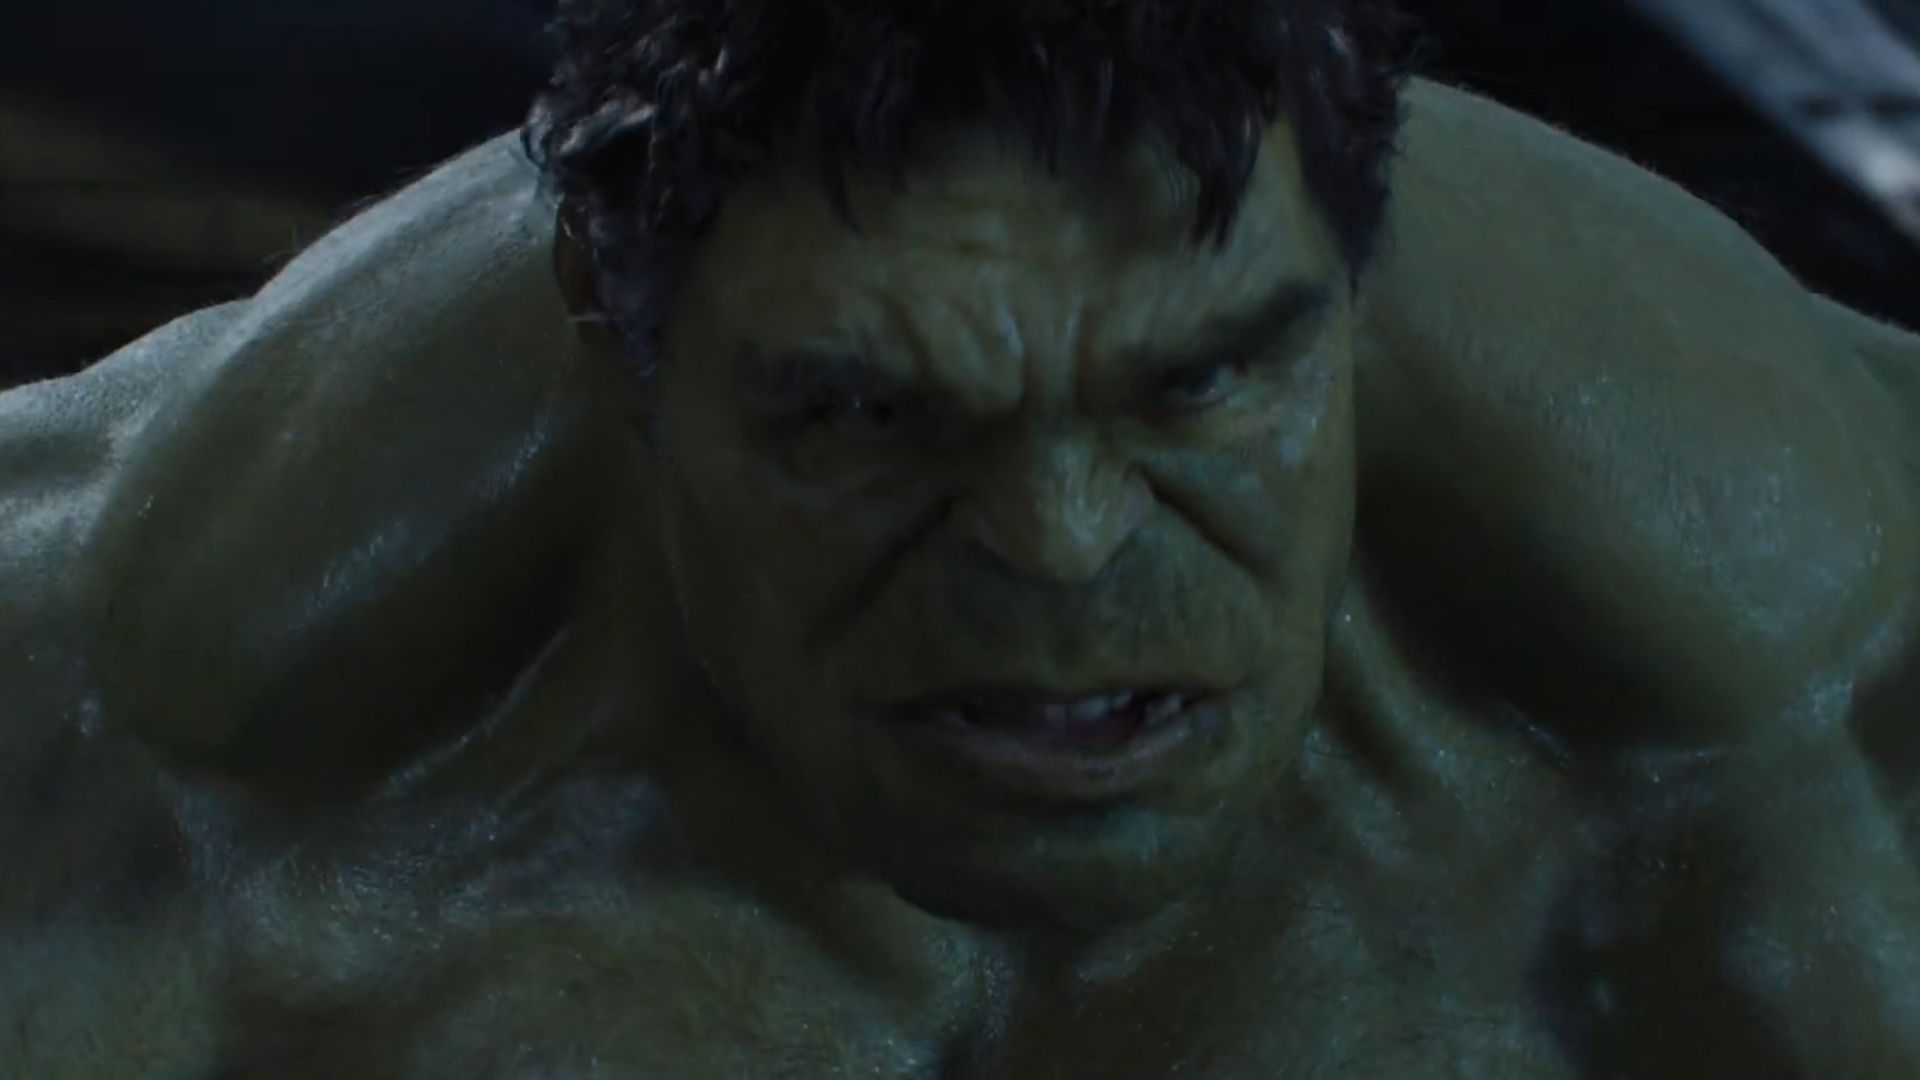 También hay varias combinaciones con el personaje de Hulk (Foto: Archivo)